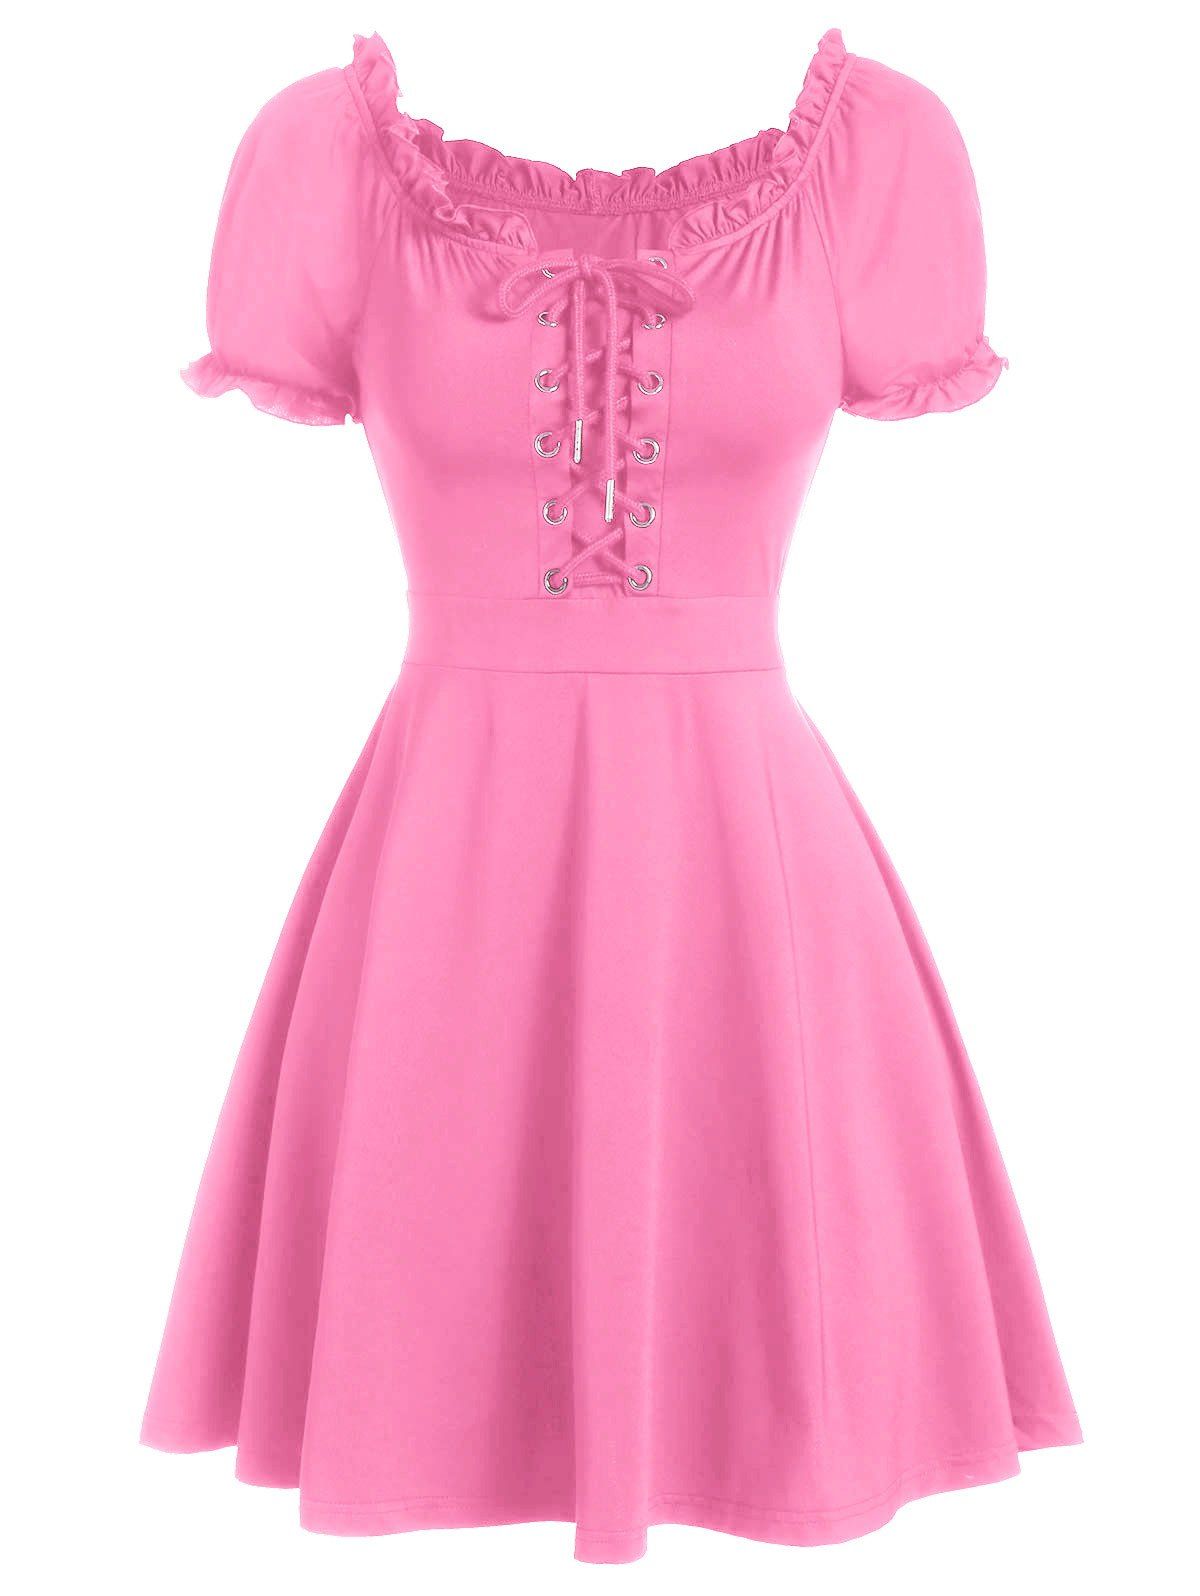 Ruffle Lace-up Mini Milkmaid Dress - PINK M